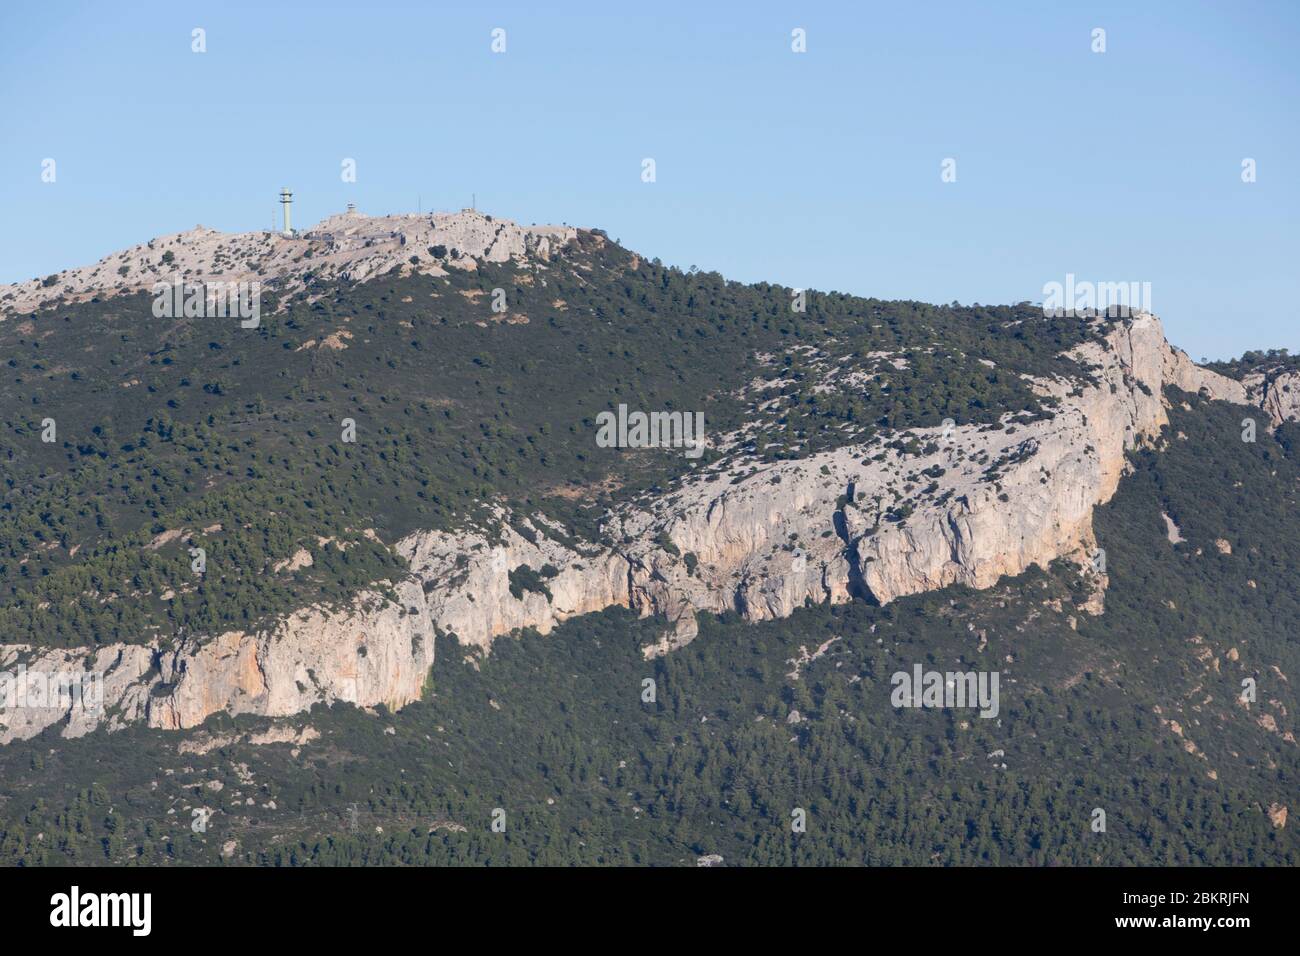 France, Var, Le Revest les eaux, Mont Caume which overlooks the city of Toulon Stock Photo